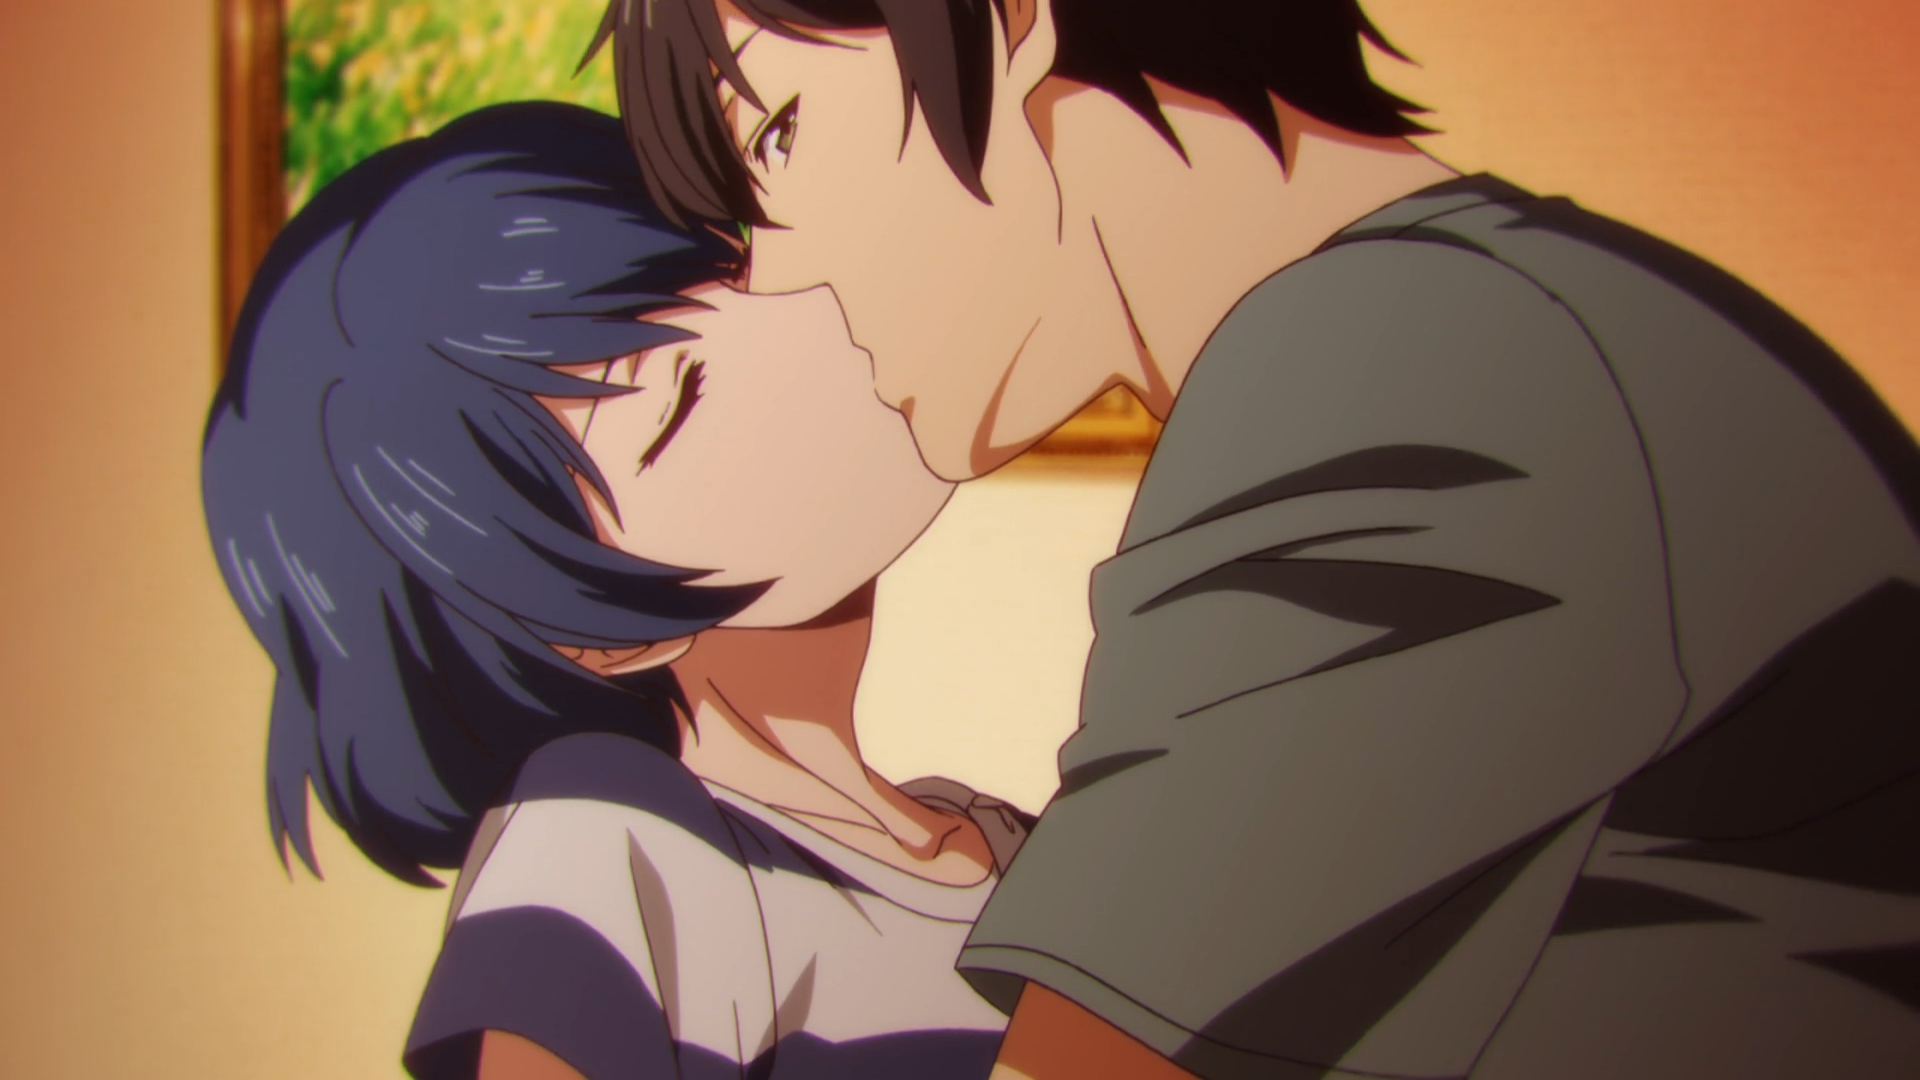 Hình ảnh Anime hôn nhau dễ thương